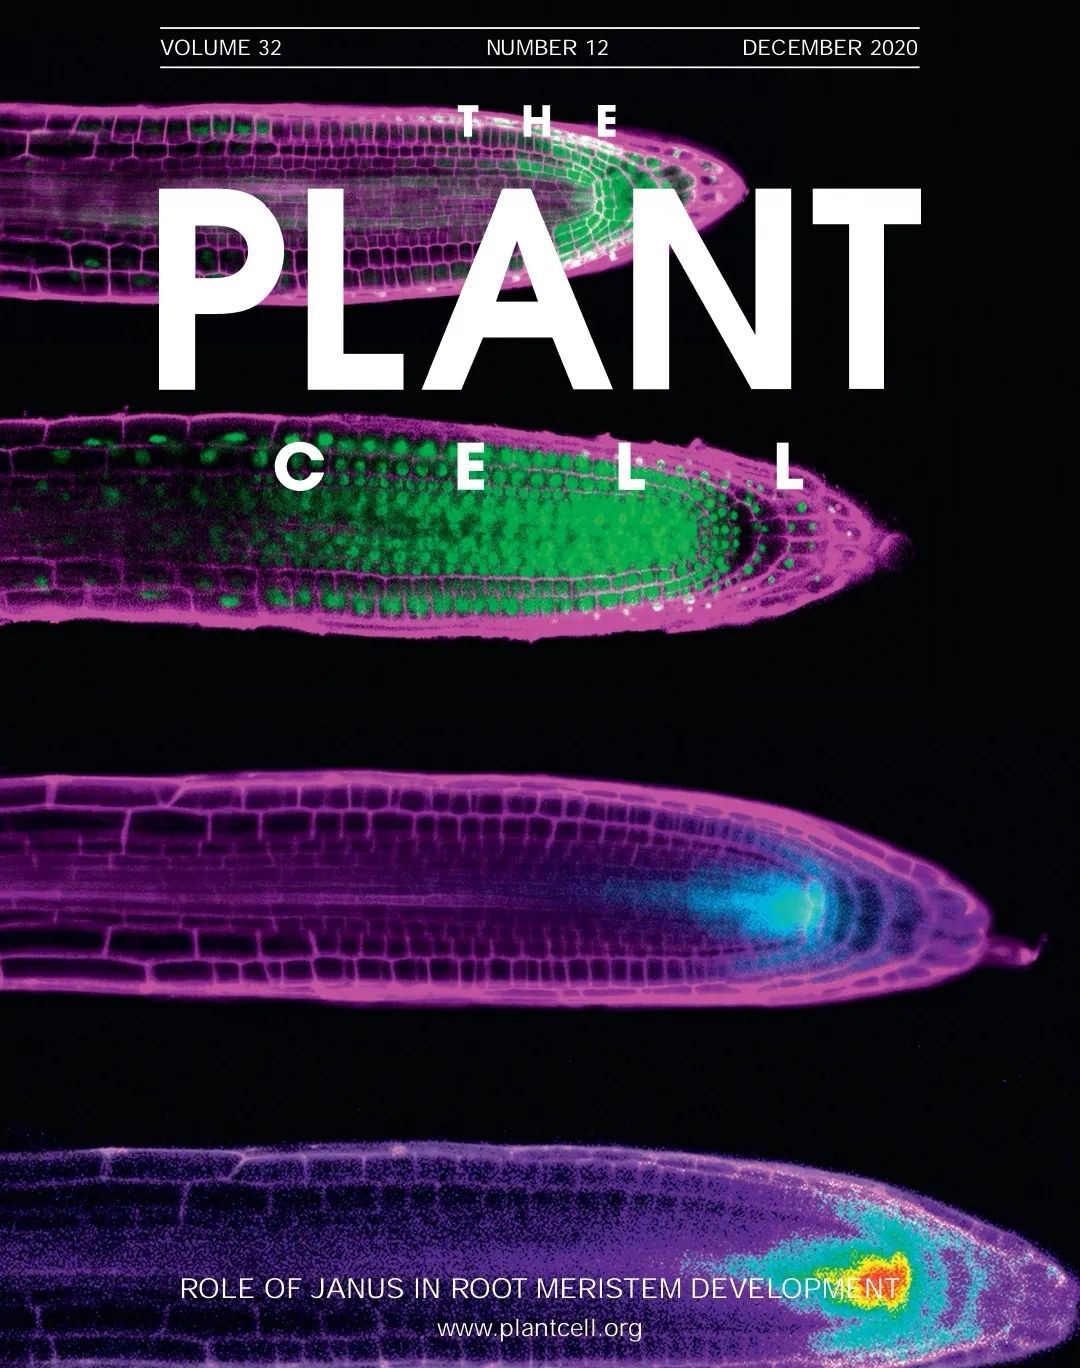 山东农大发表plant Cell 封面 在根尖分生区发育研究中取得进展 Iplants 微信公众号文章阅读 Wemp